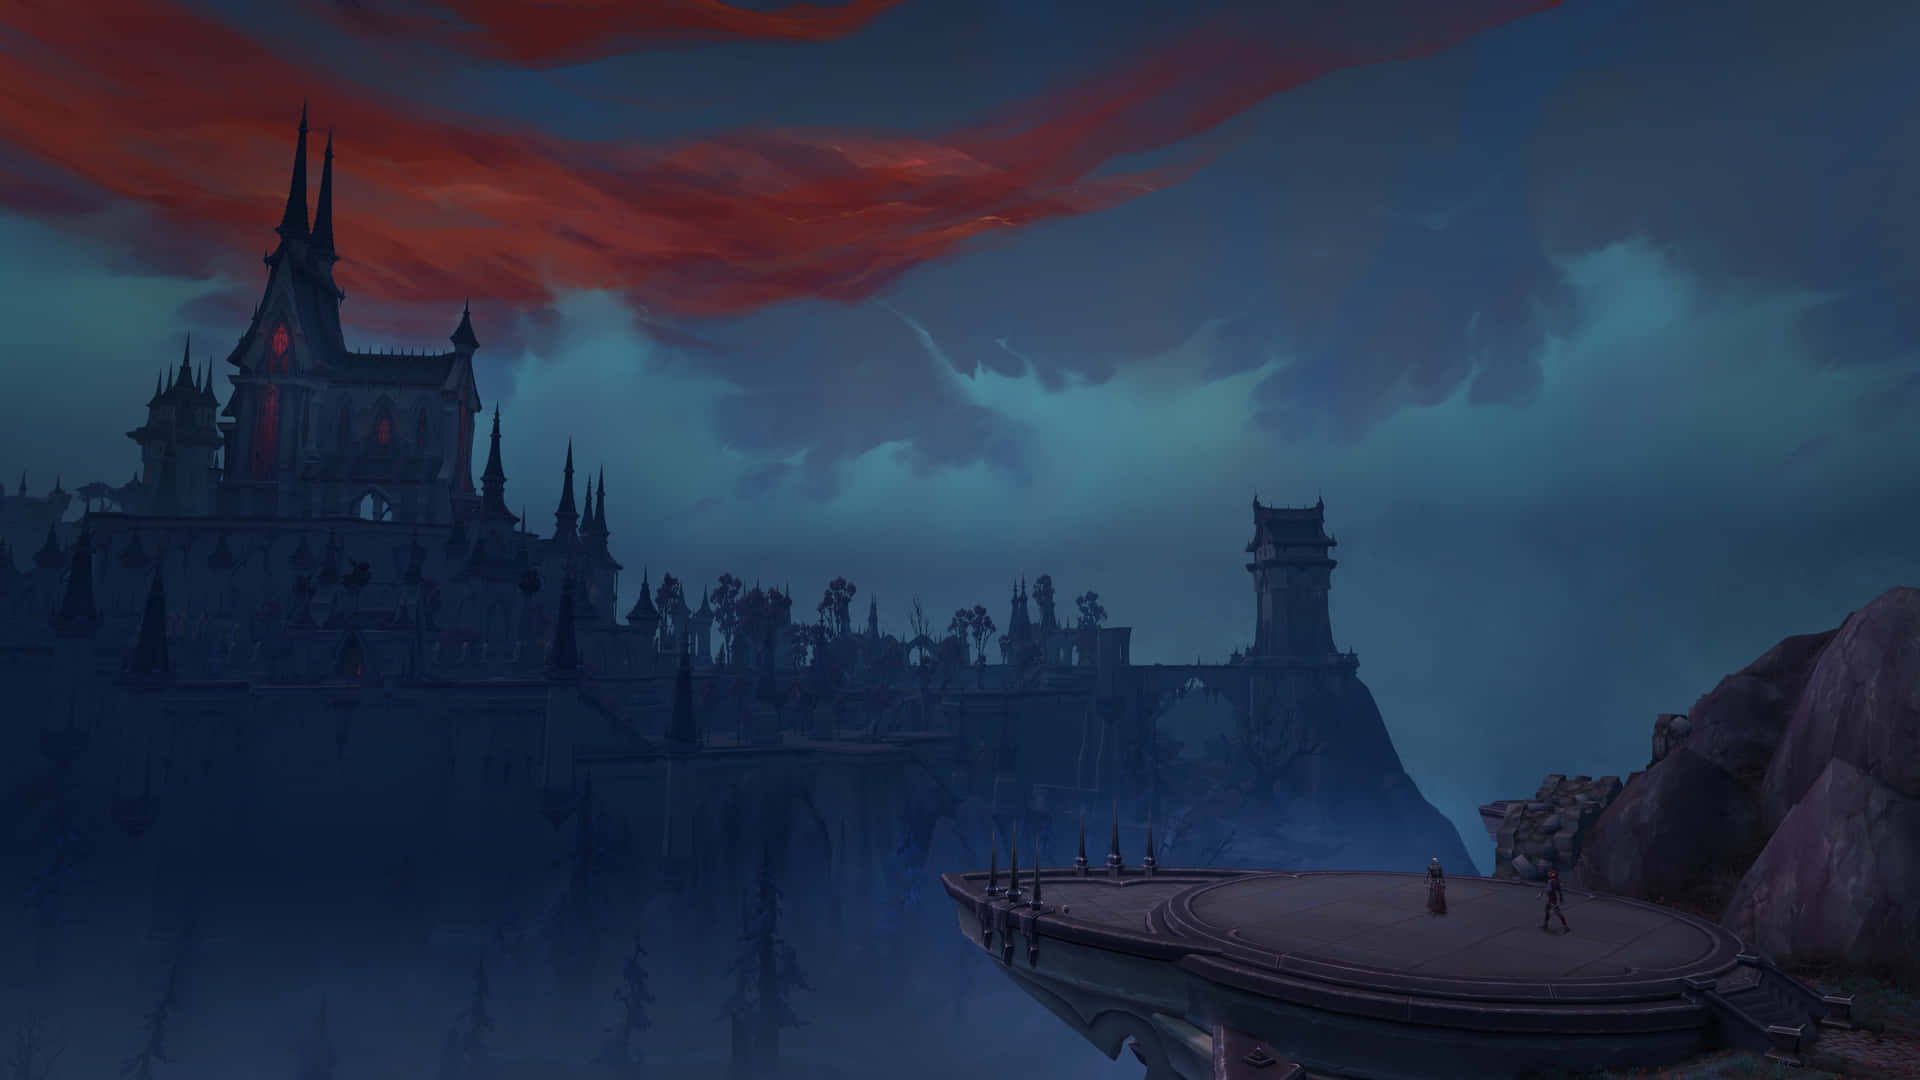 Udforsk de uendelige muligheder i Skyggelandene i World of Warcraft. Wallpaper